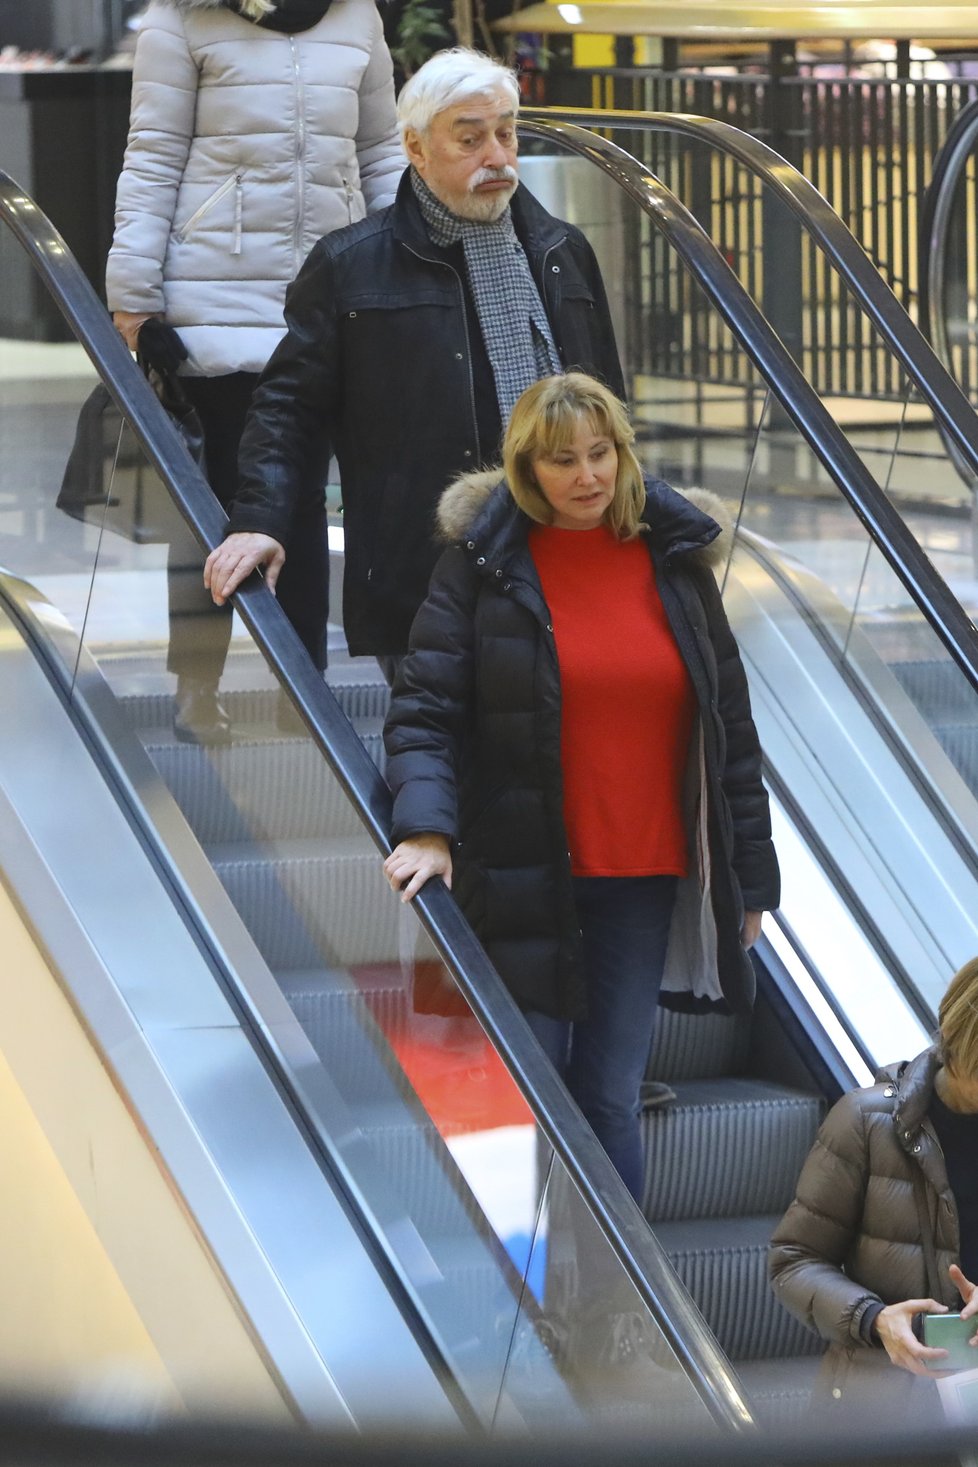 Očividně otrávený Jan Rosák s manželkou na nákupech